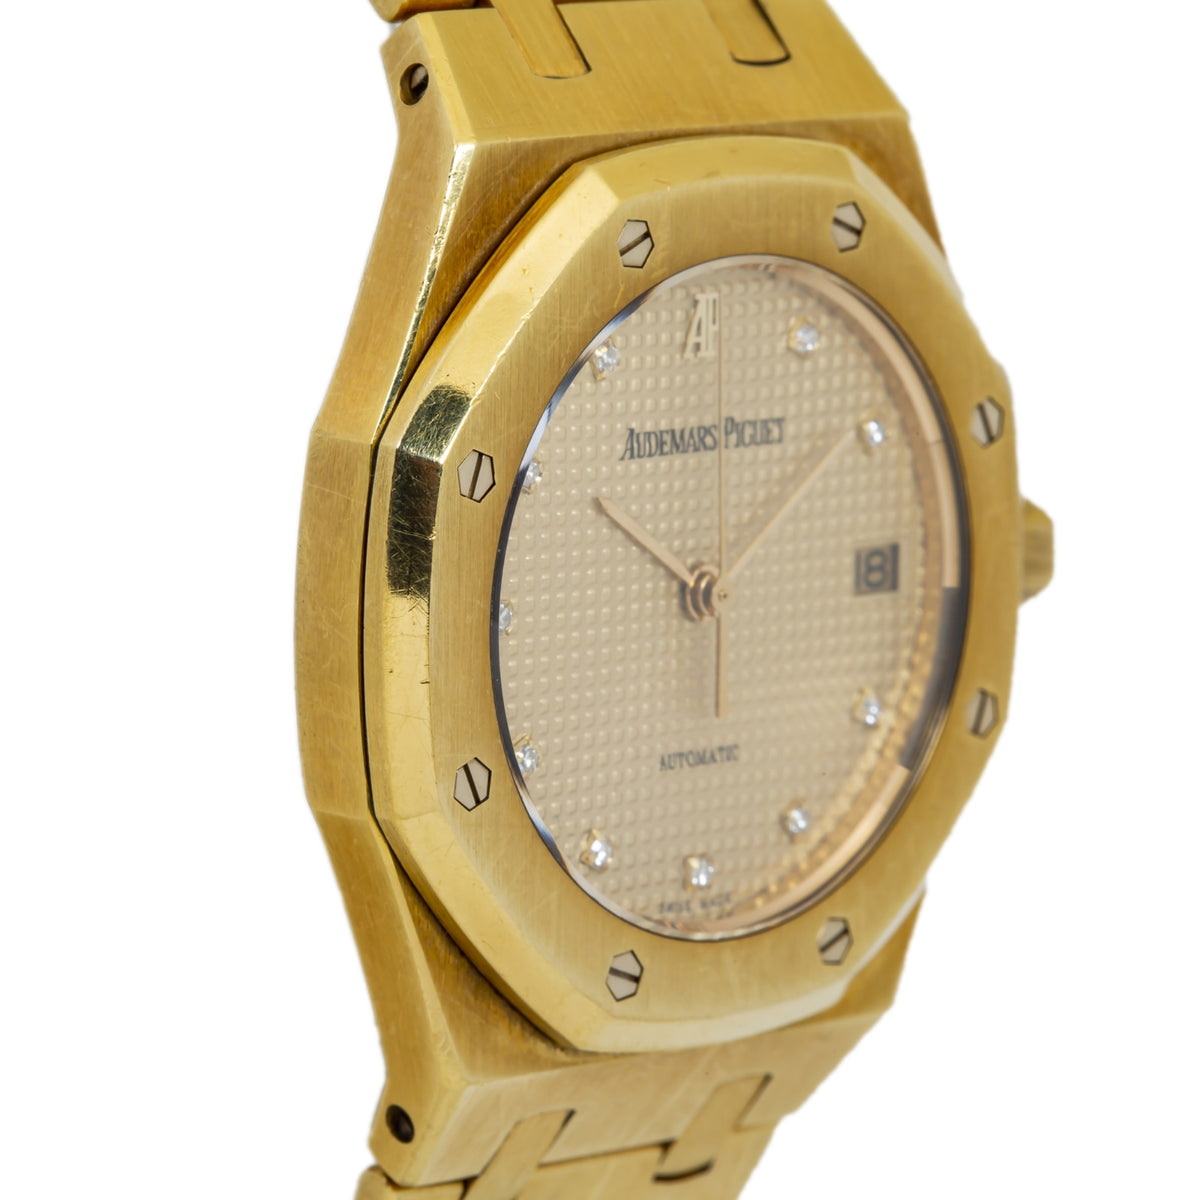 Audemars Piguet Royal Oak 14790BA 1990's 18k Yellow Gold Automatic Watch 36mm